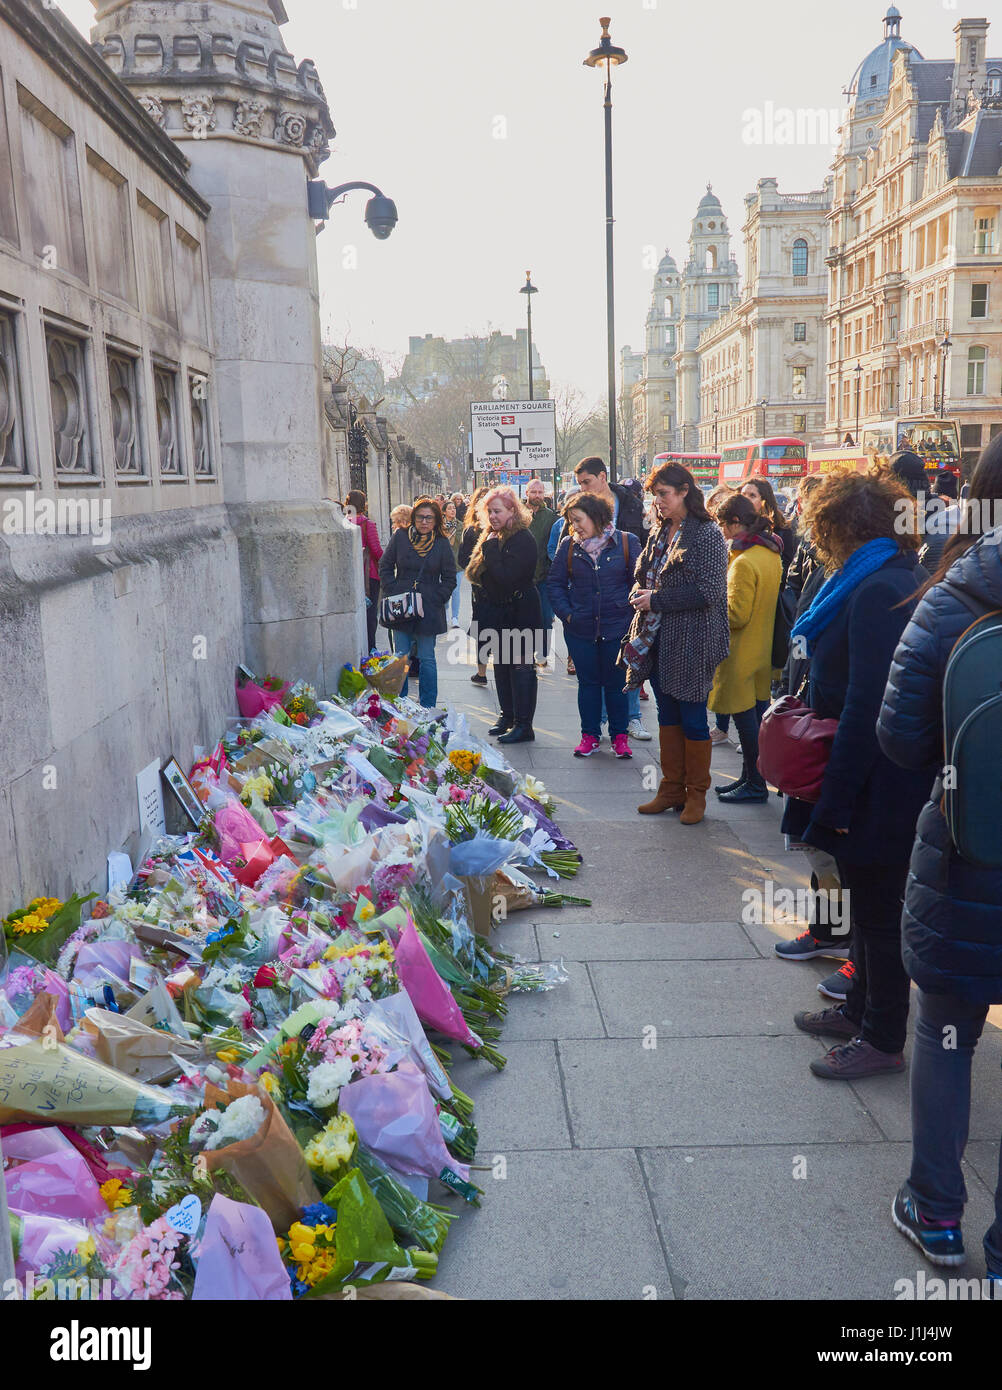 Les touristes et les Londoniens à la recherche au tributs floraux pour les victimes de l'attaque terroriste de Westminster, Westminster Bridge, Londres, Angleterre Banque D'Images